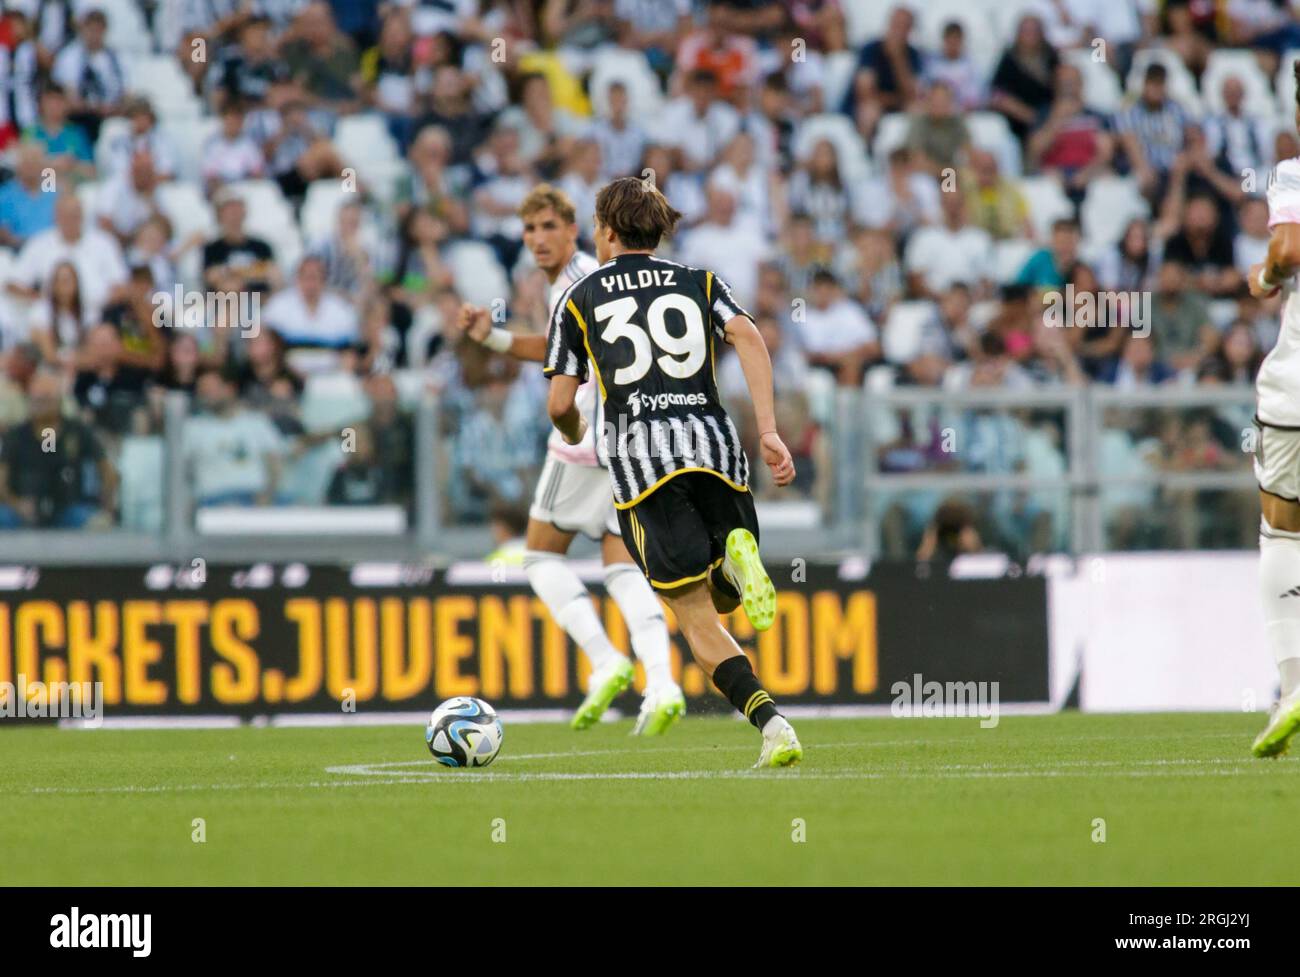 Friendly football match - Juventus FC vs Juventus U23 Next Gen Kenan Yildiz  of Juventus during the